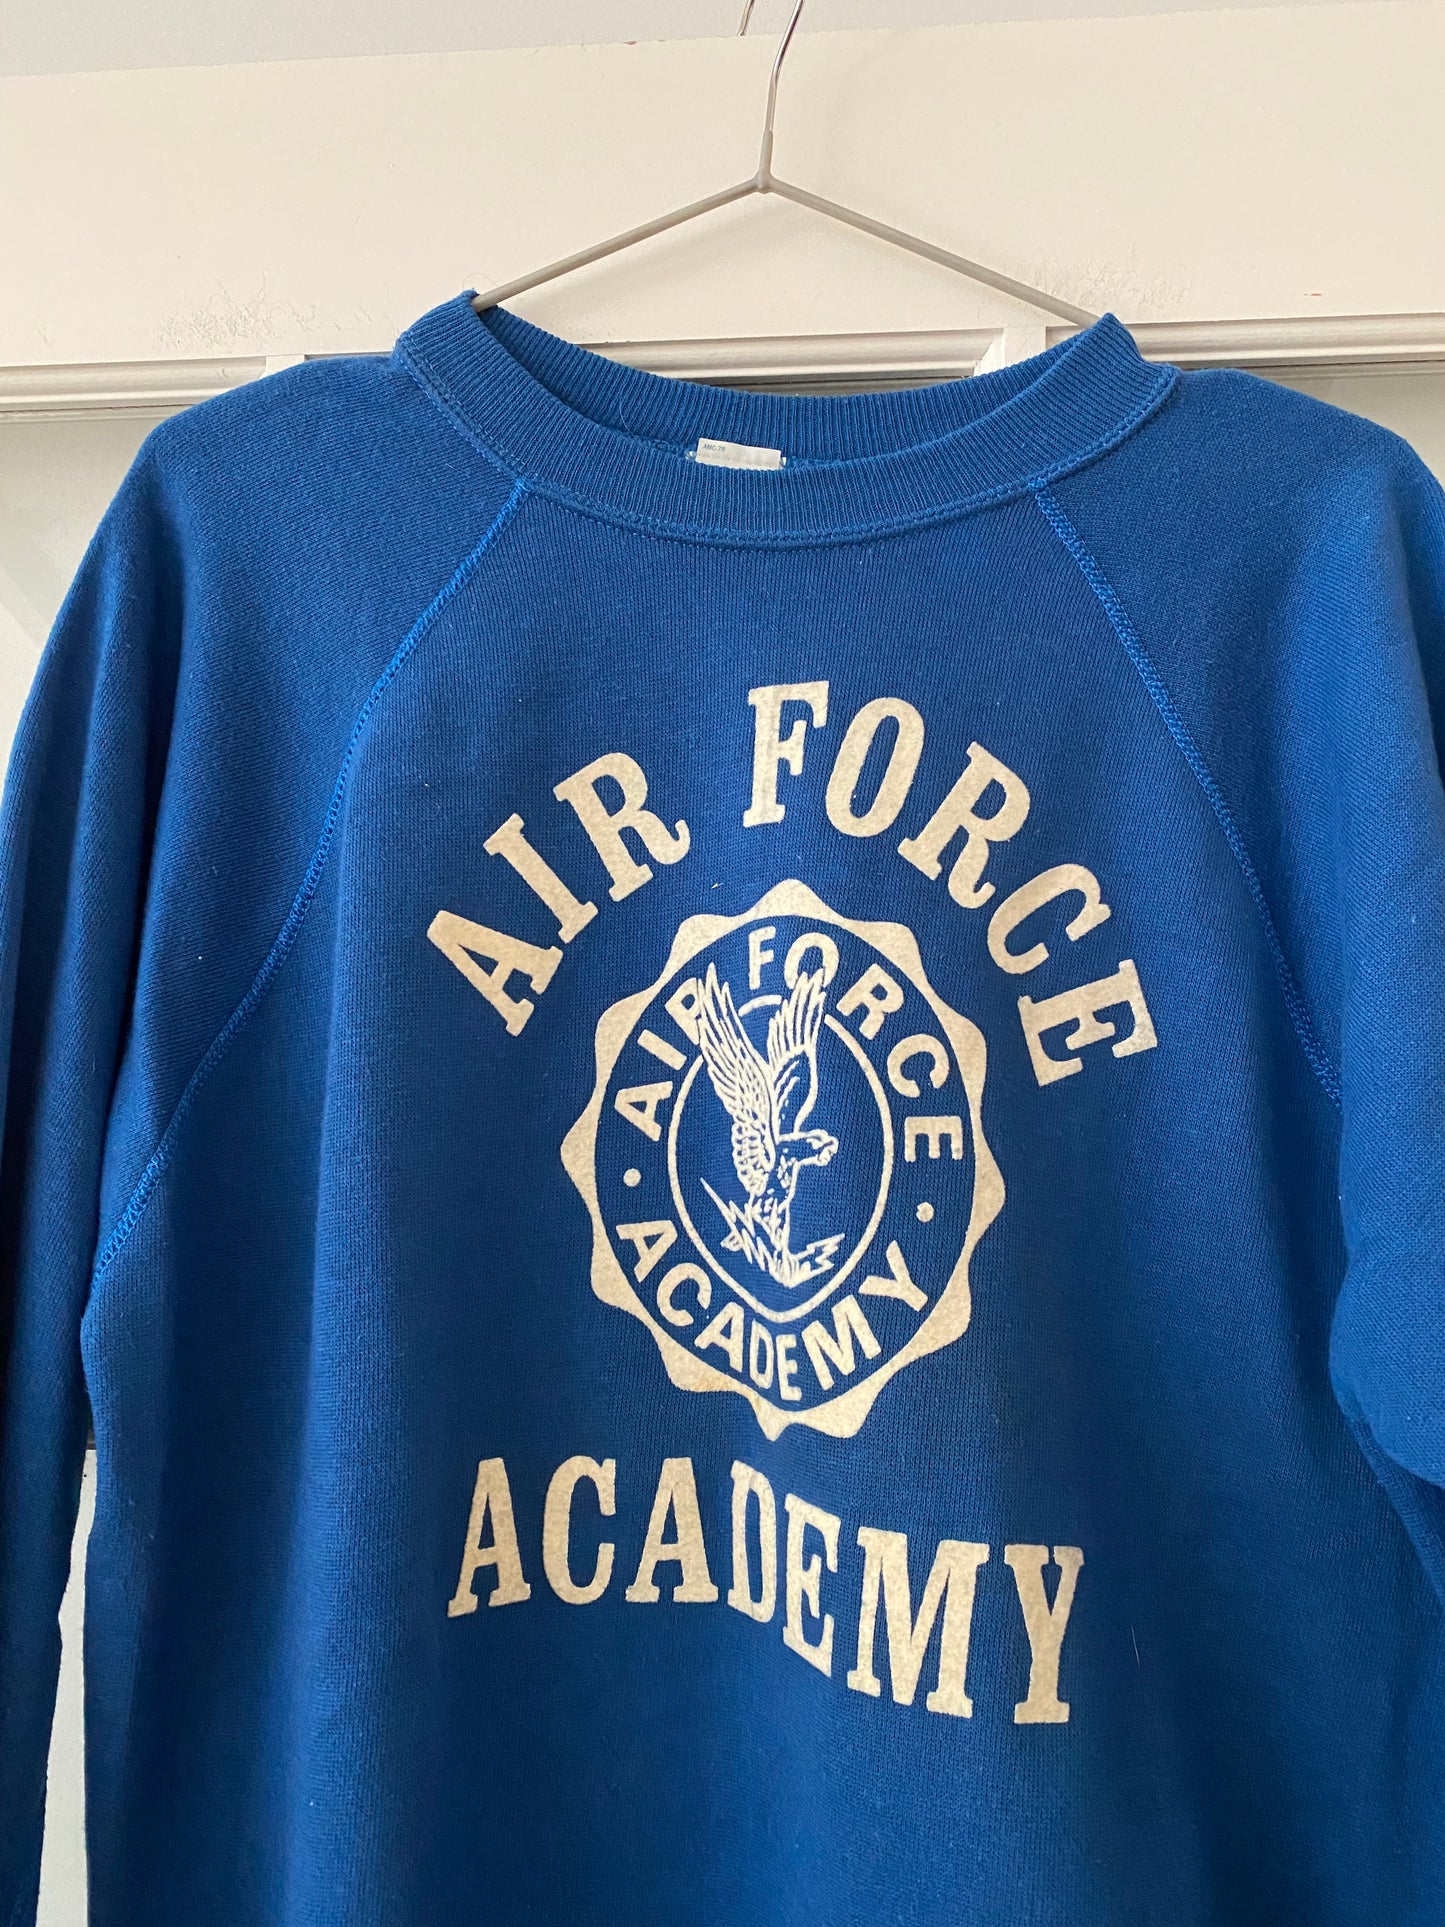 Vintage 80s Air Force Academy Crewneck | L